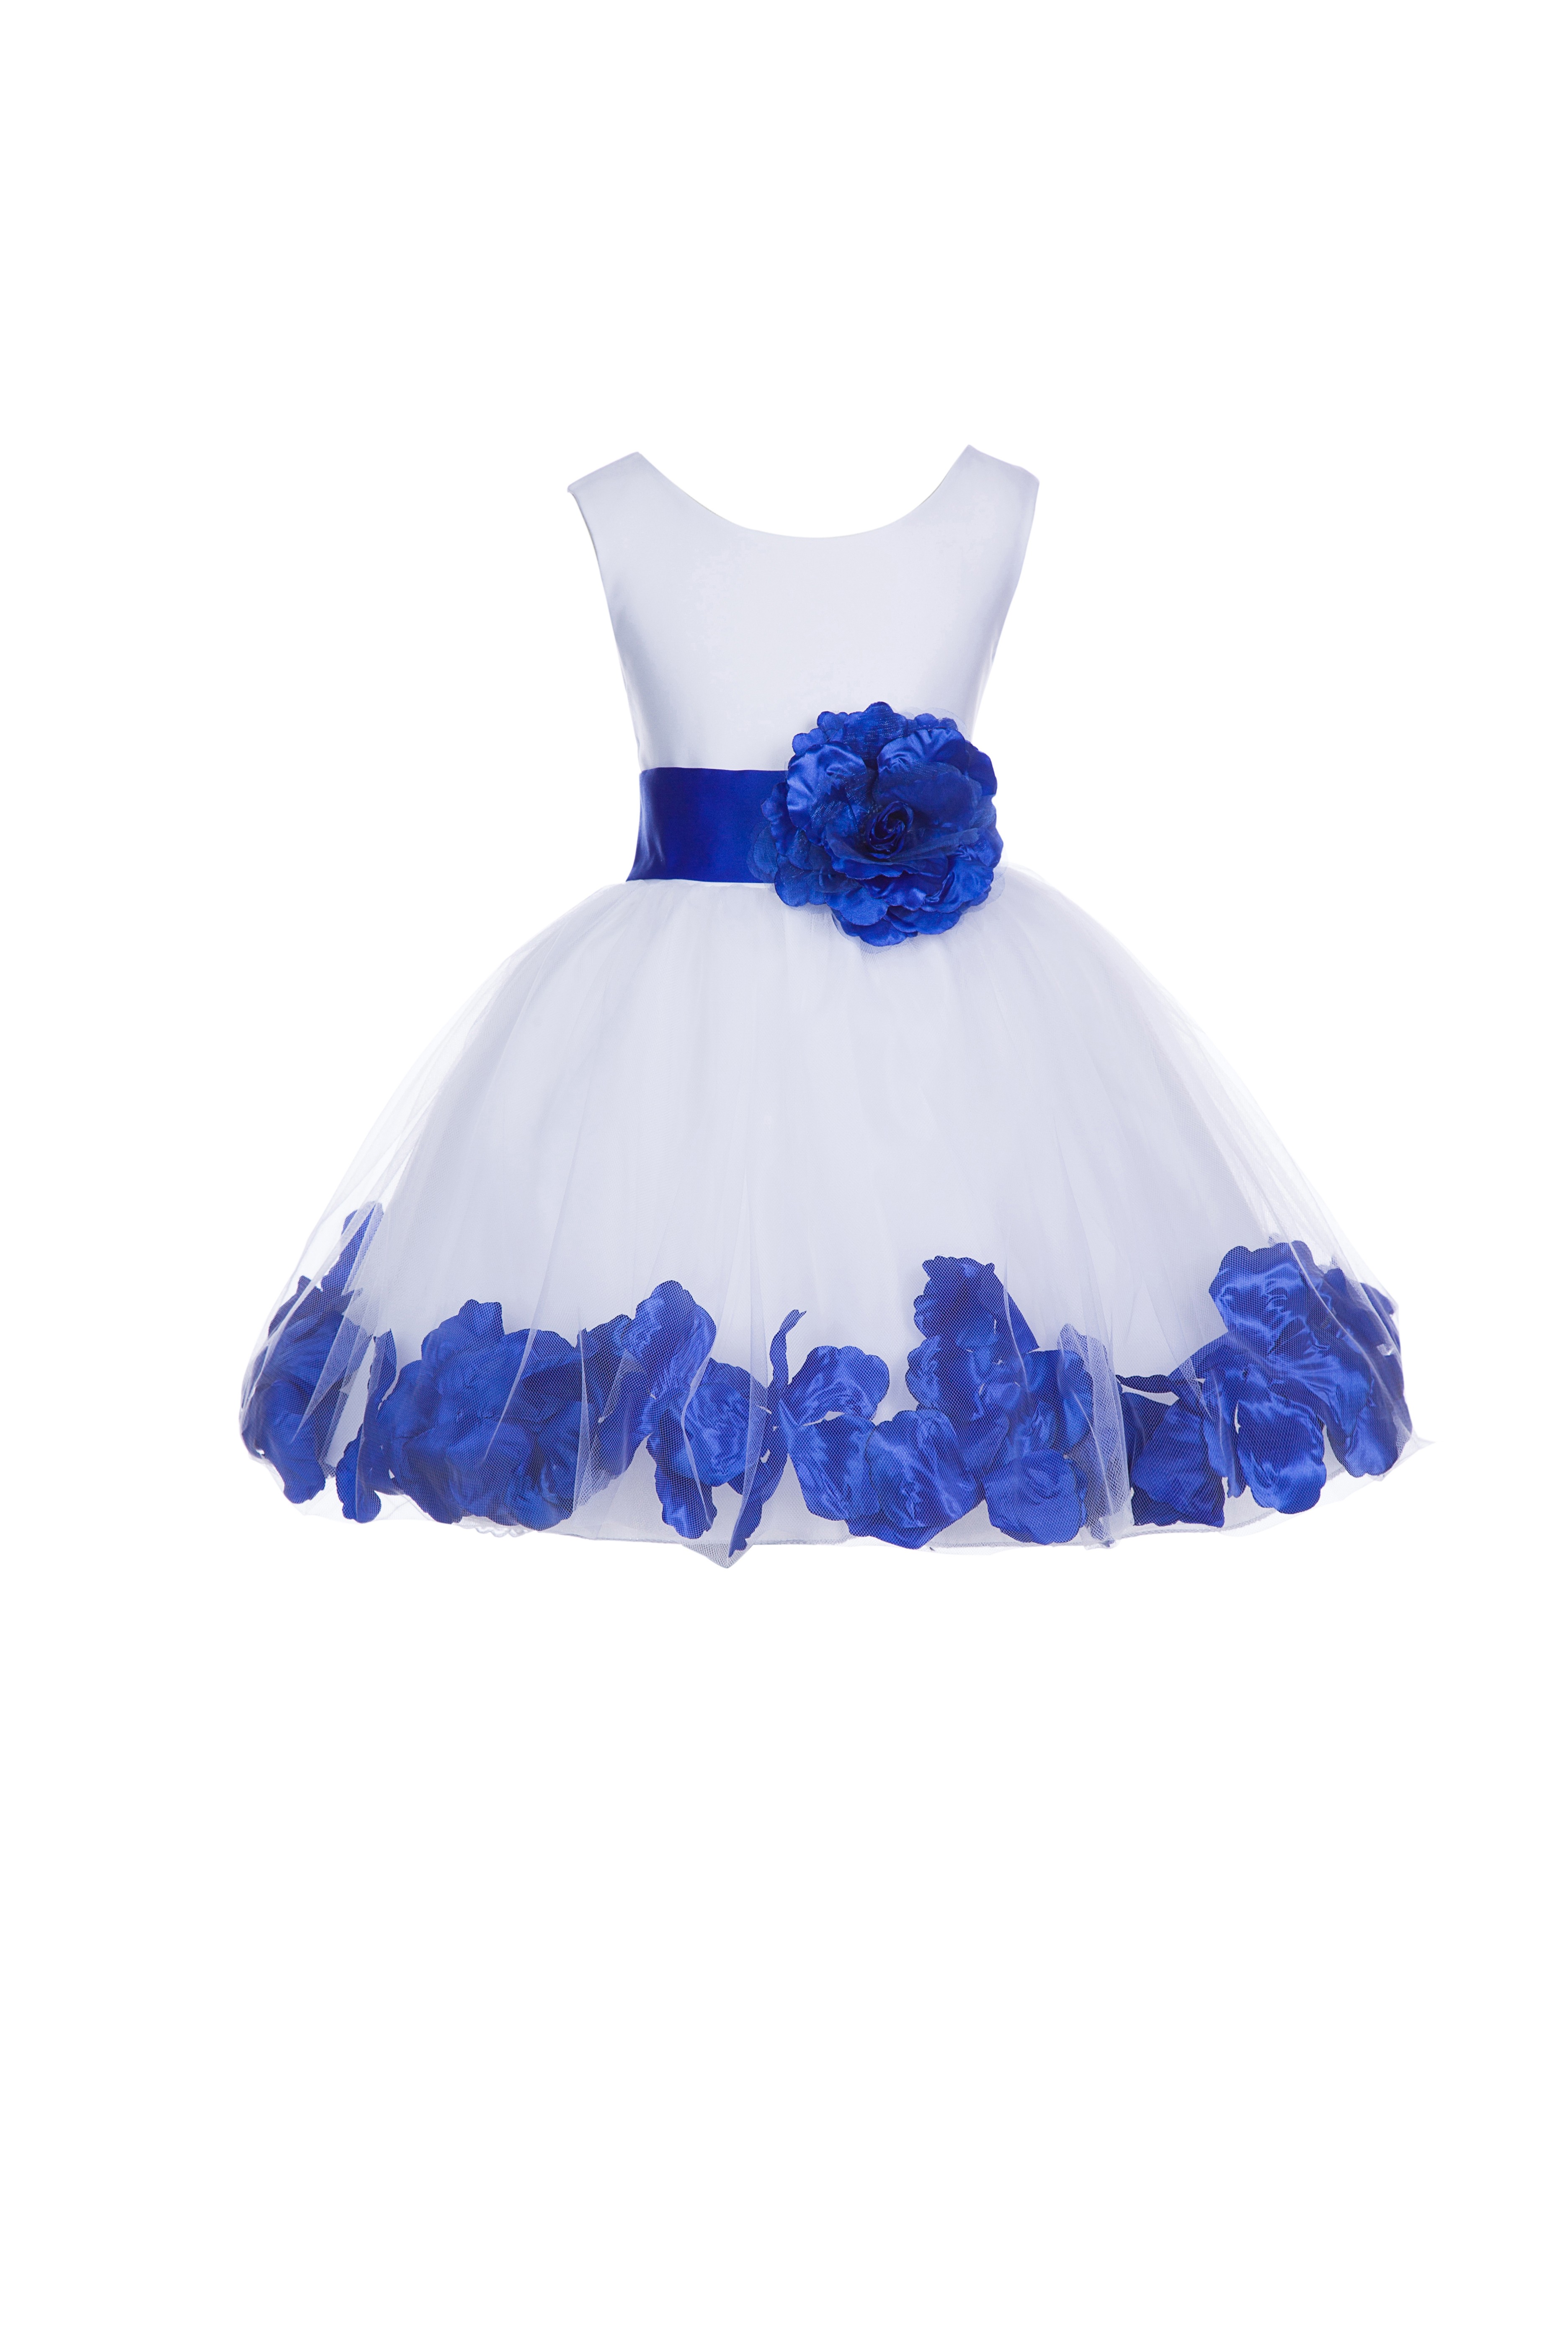 White/Horizon Tulle Rose Petals Knee Length Flower Girl Dress 306S